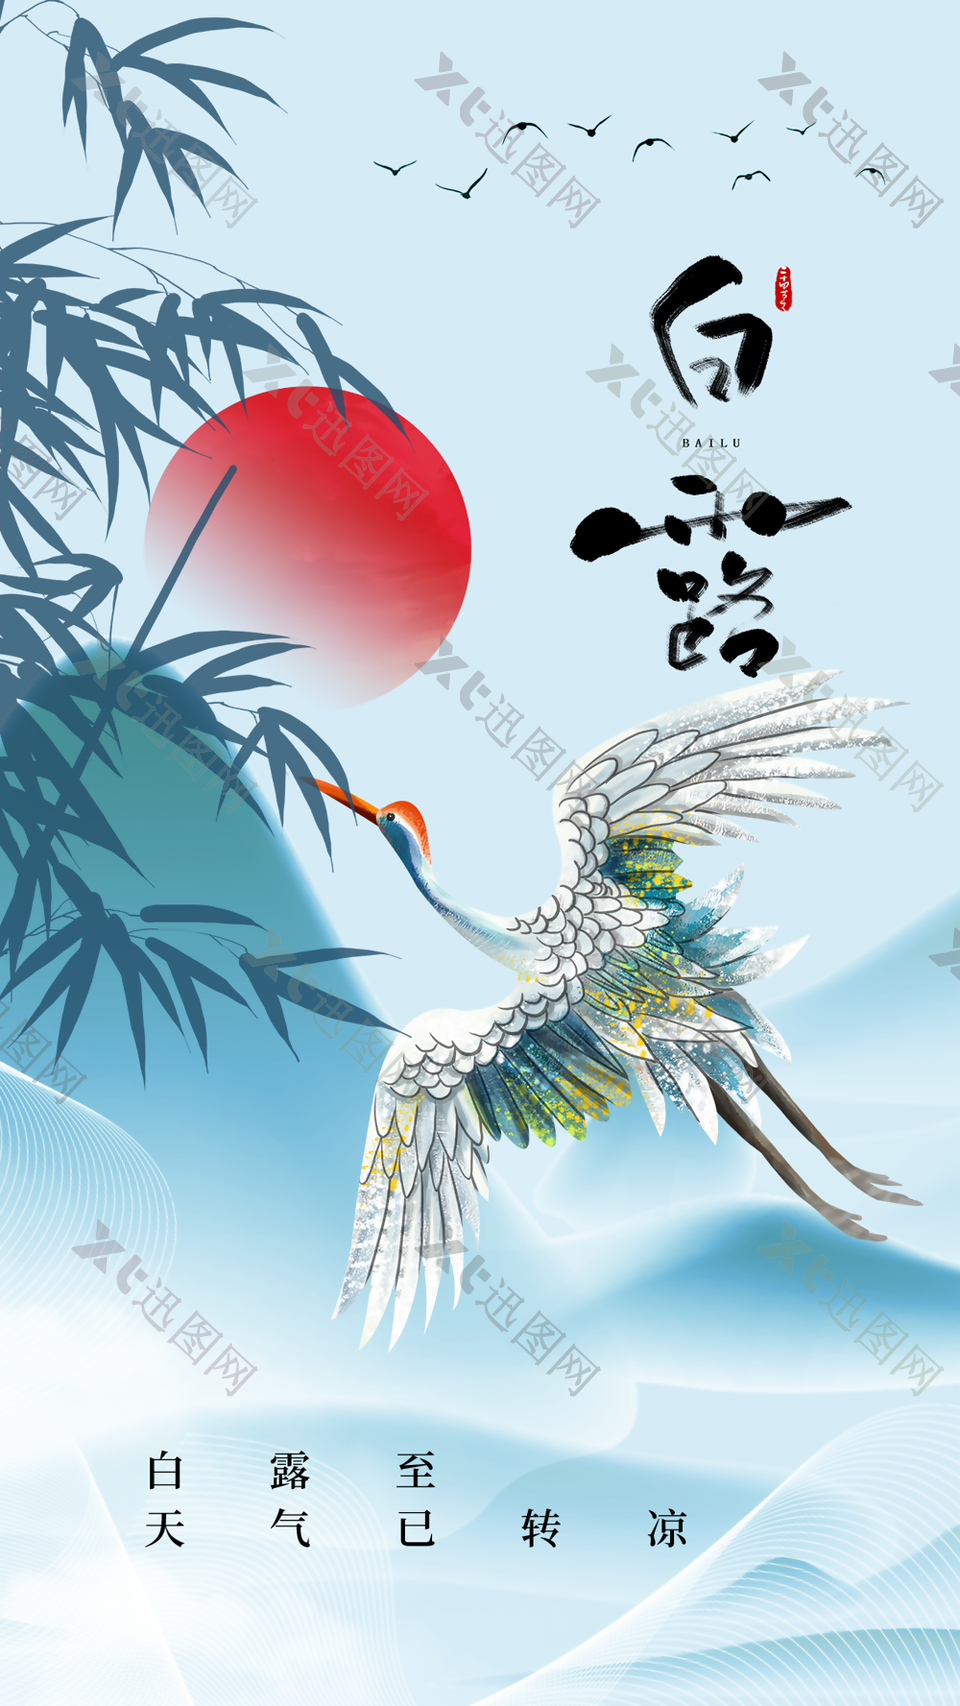 创意唯美典雅中国风白露海报图片设计